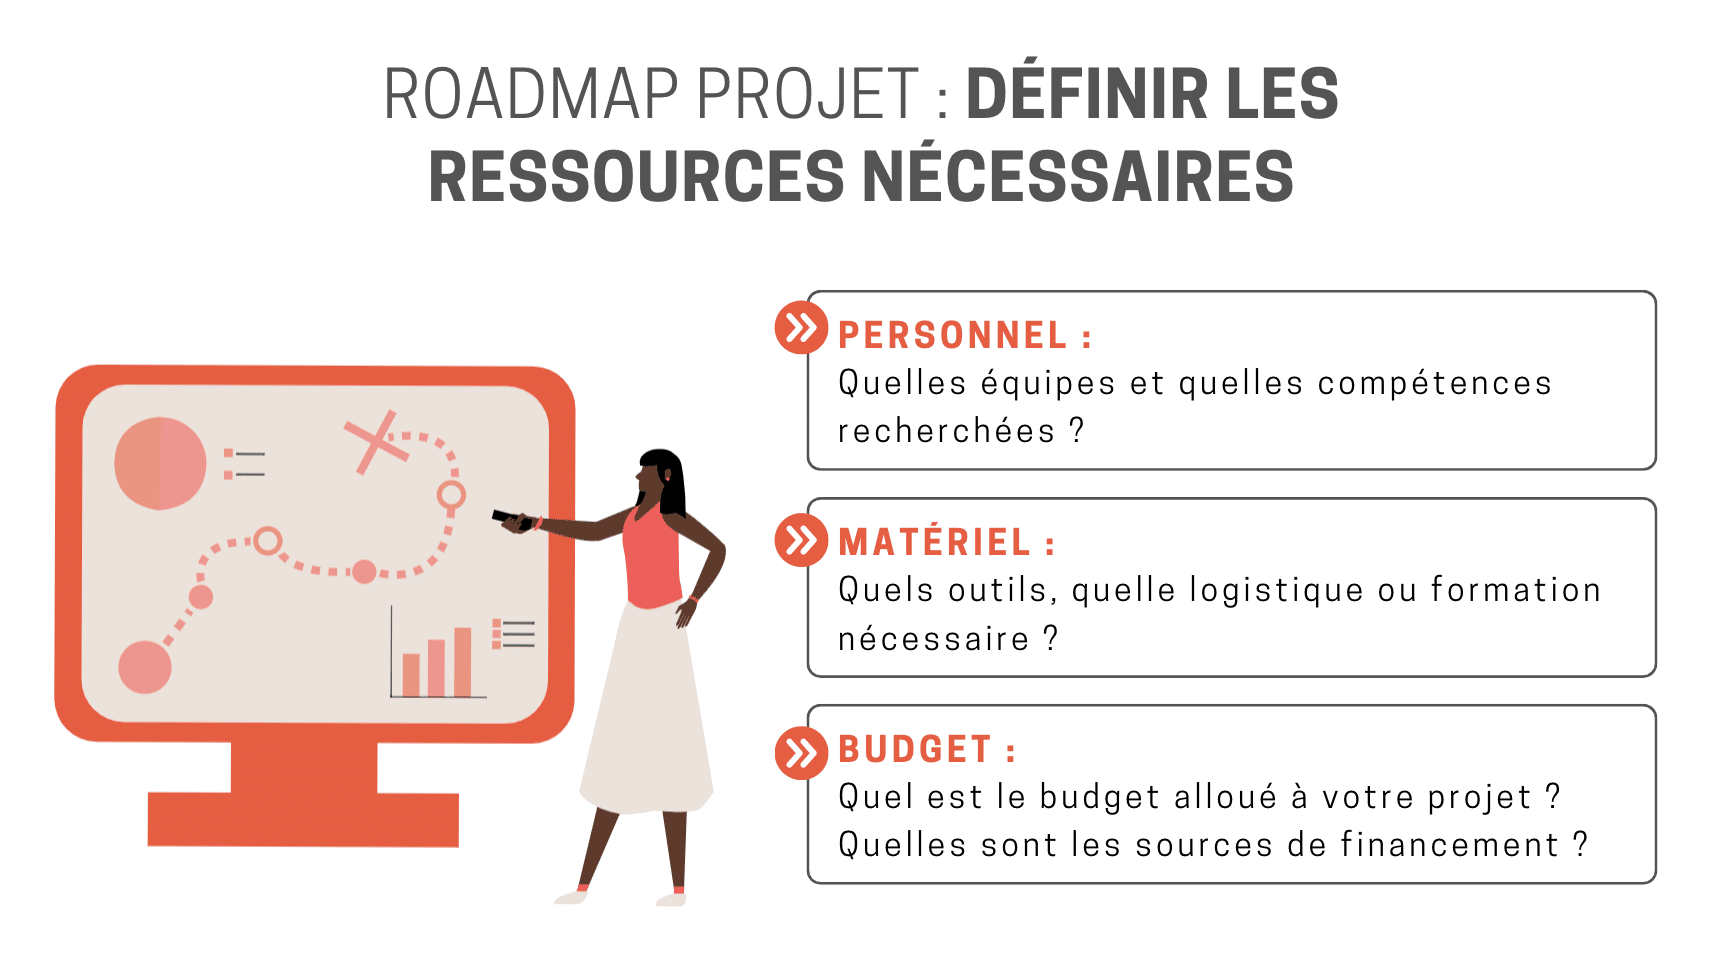 Roadmap projet : définir les ressources en termes de personnel, matériel et budget